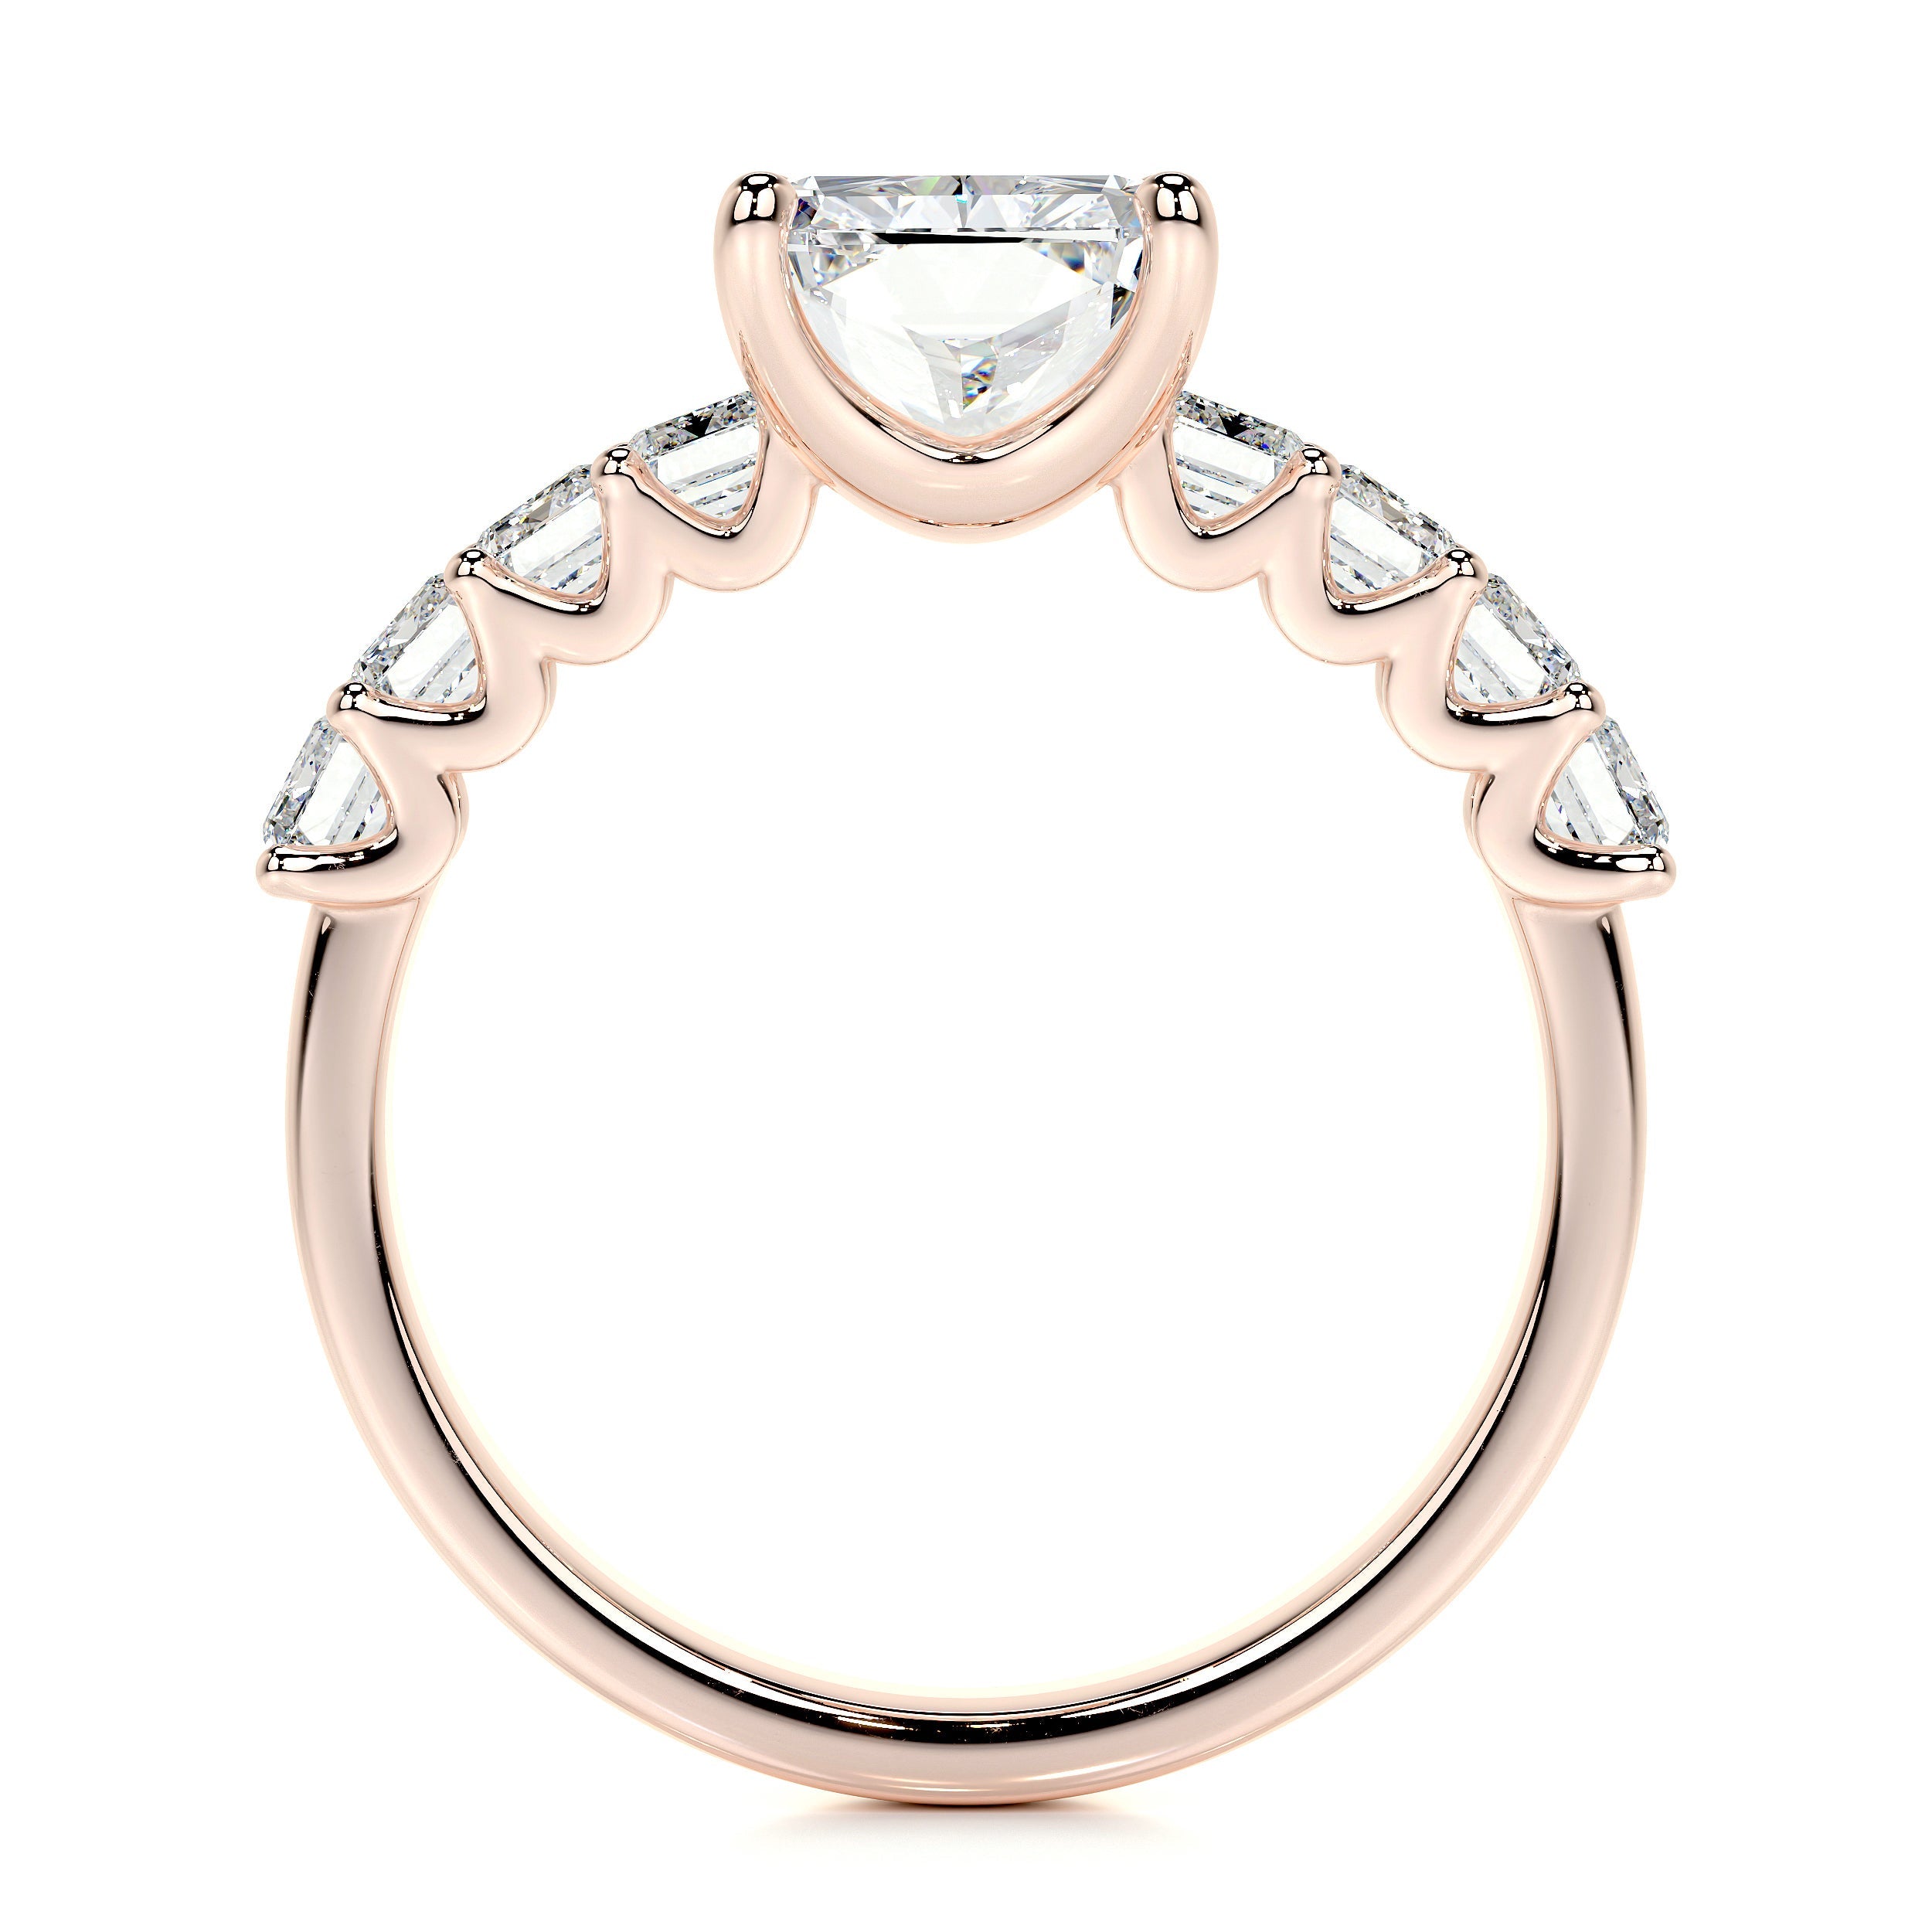 Arabella Lab Grown Diamond Ring   (5 Carat) -14K Rose Gold